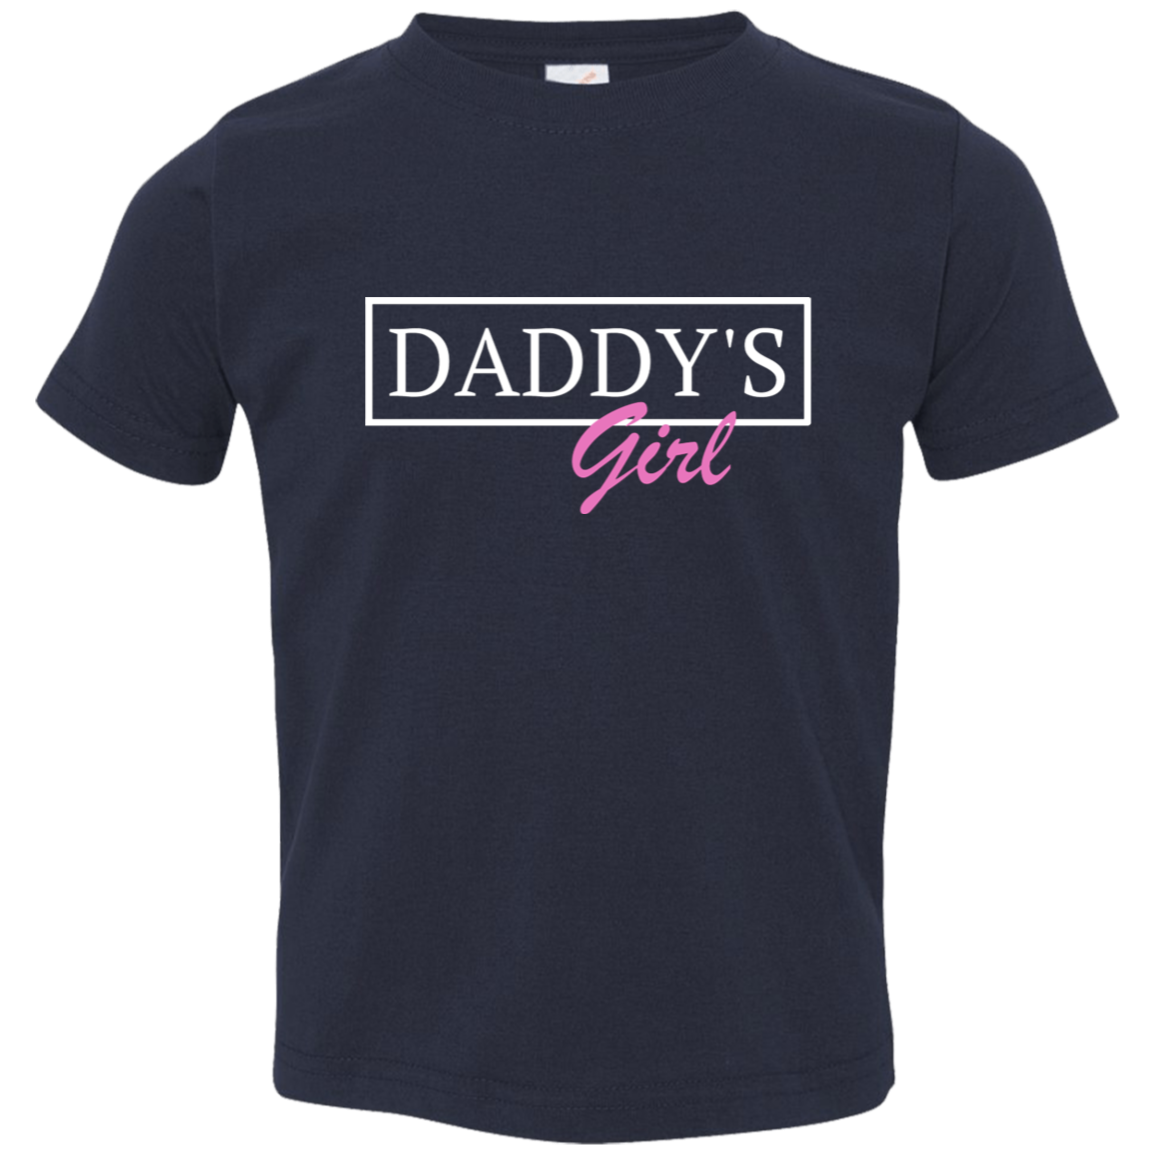 Toddler Jersey T-Shirt - "Daddys Girl" Matching Shirt